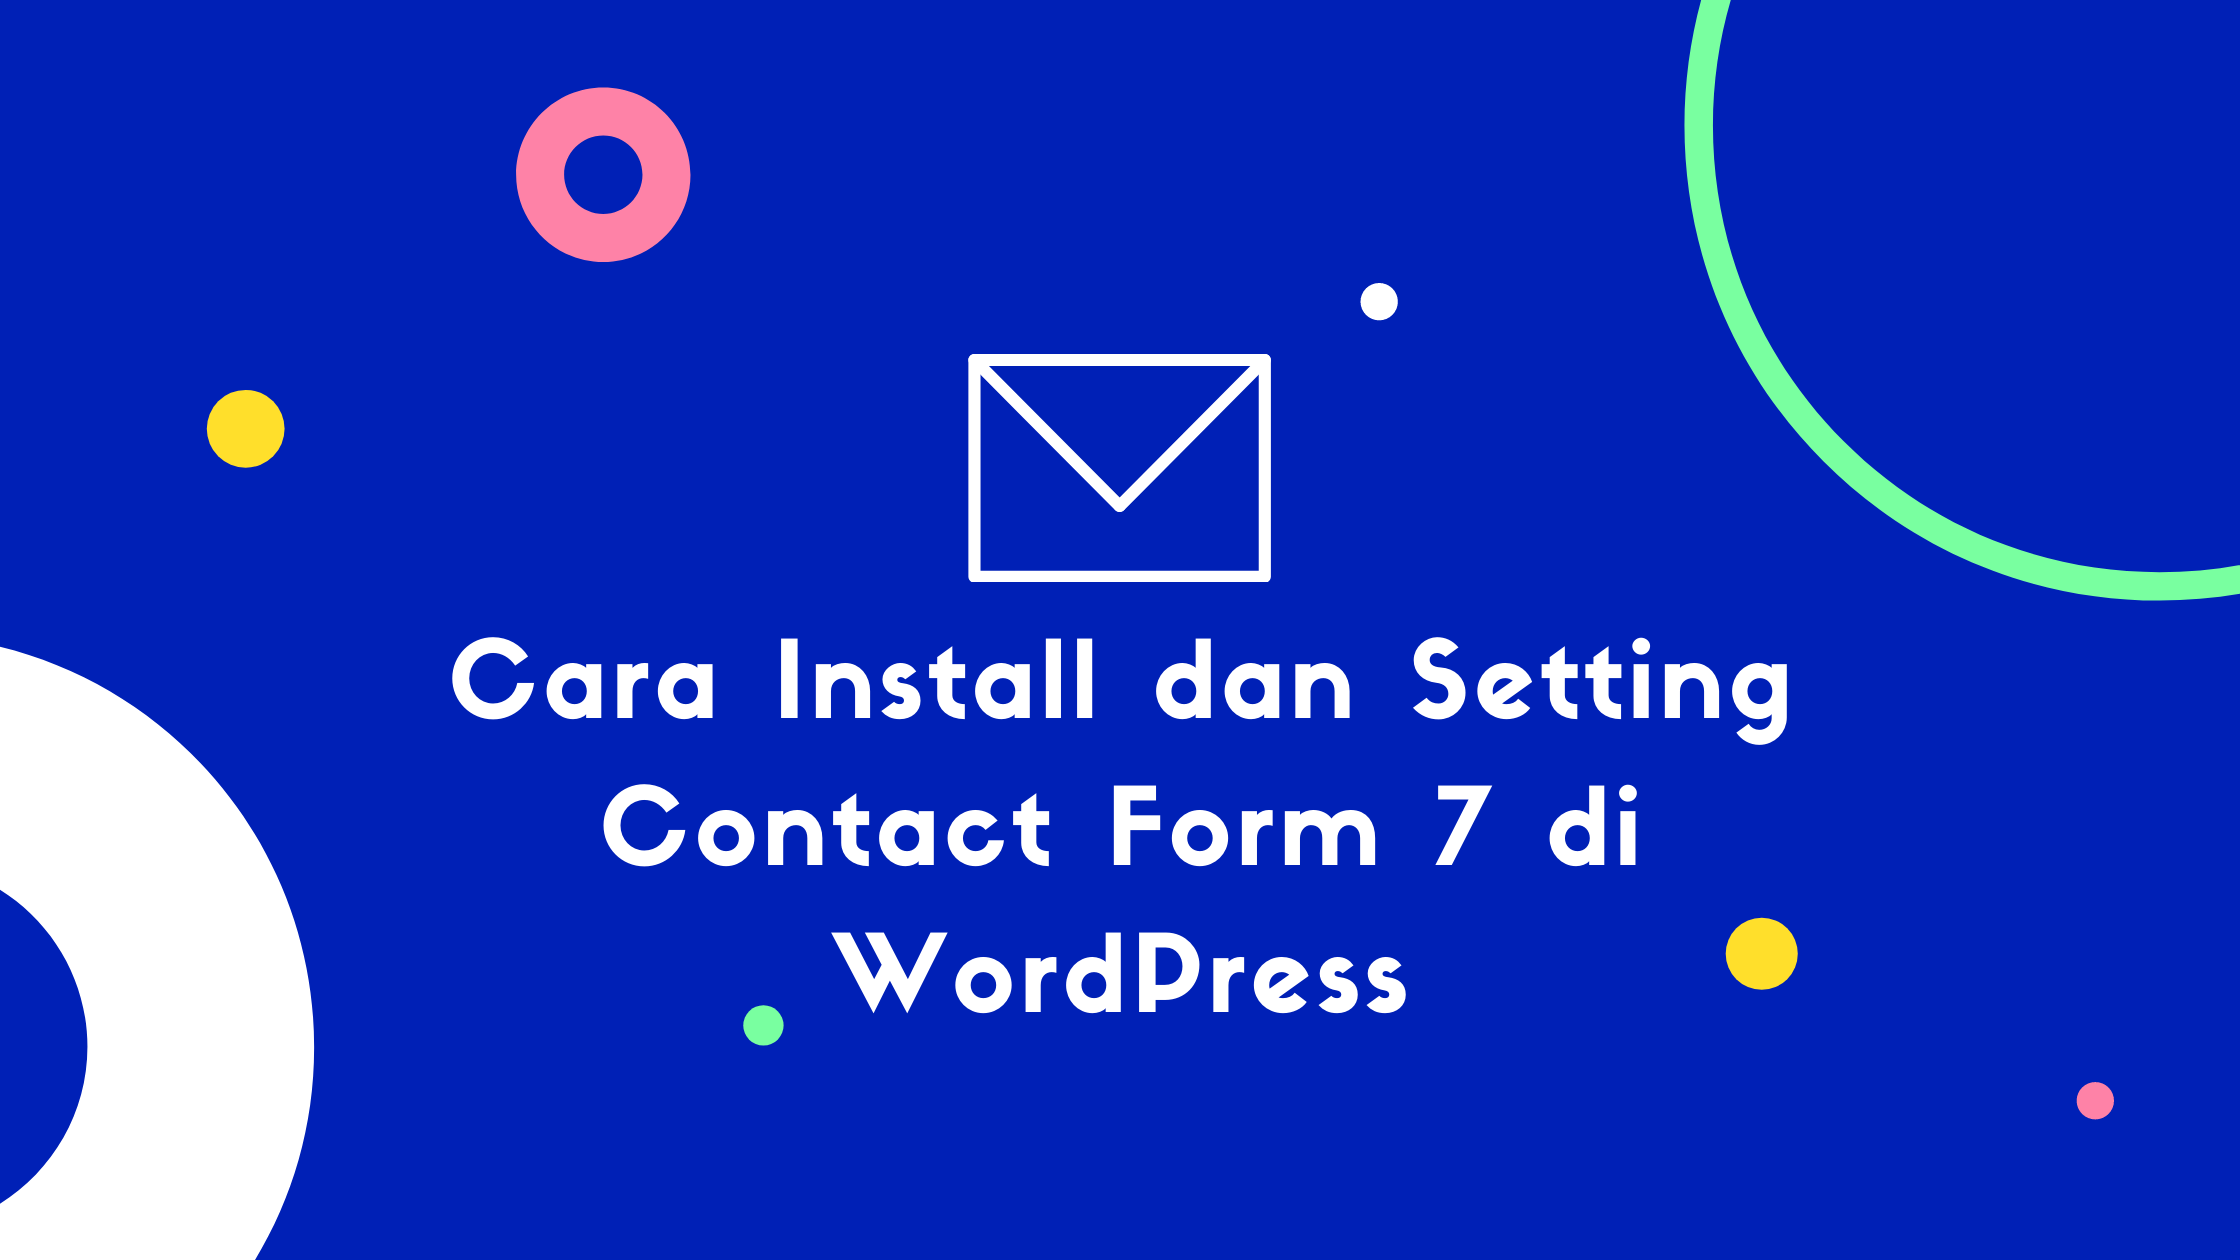 Cara Install dan Setting Contact Form 7 di WordPress Cara Install dan Setting Contact Form 7 di WordPress